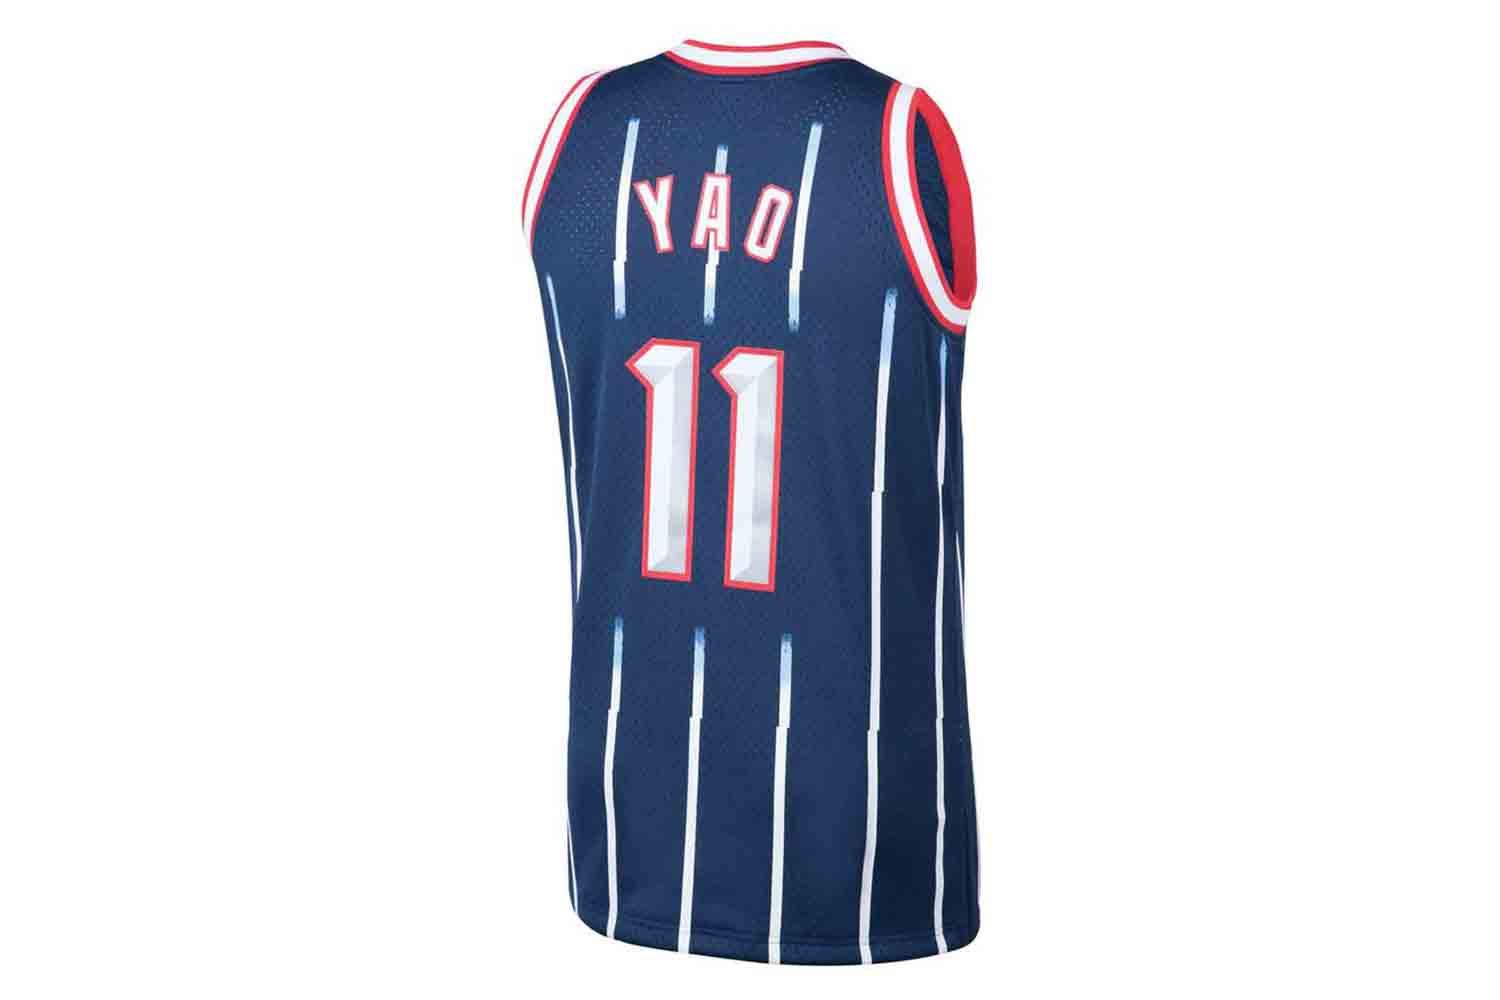 Youth Adidas Houston Rockets Yao Ming Jersey